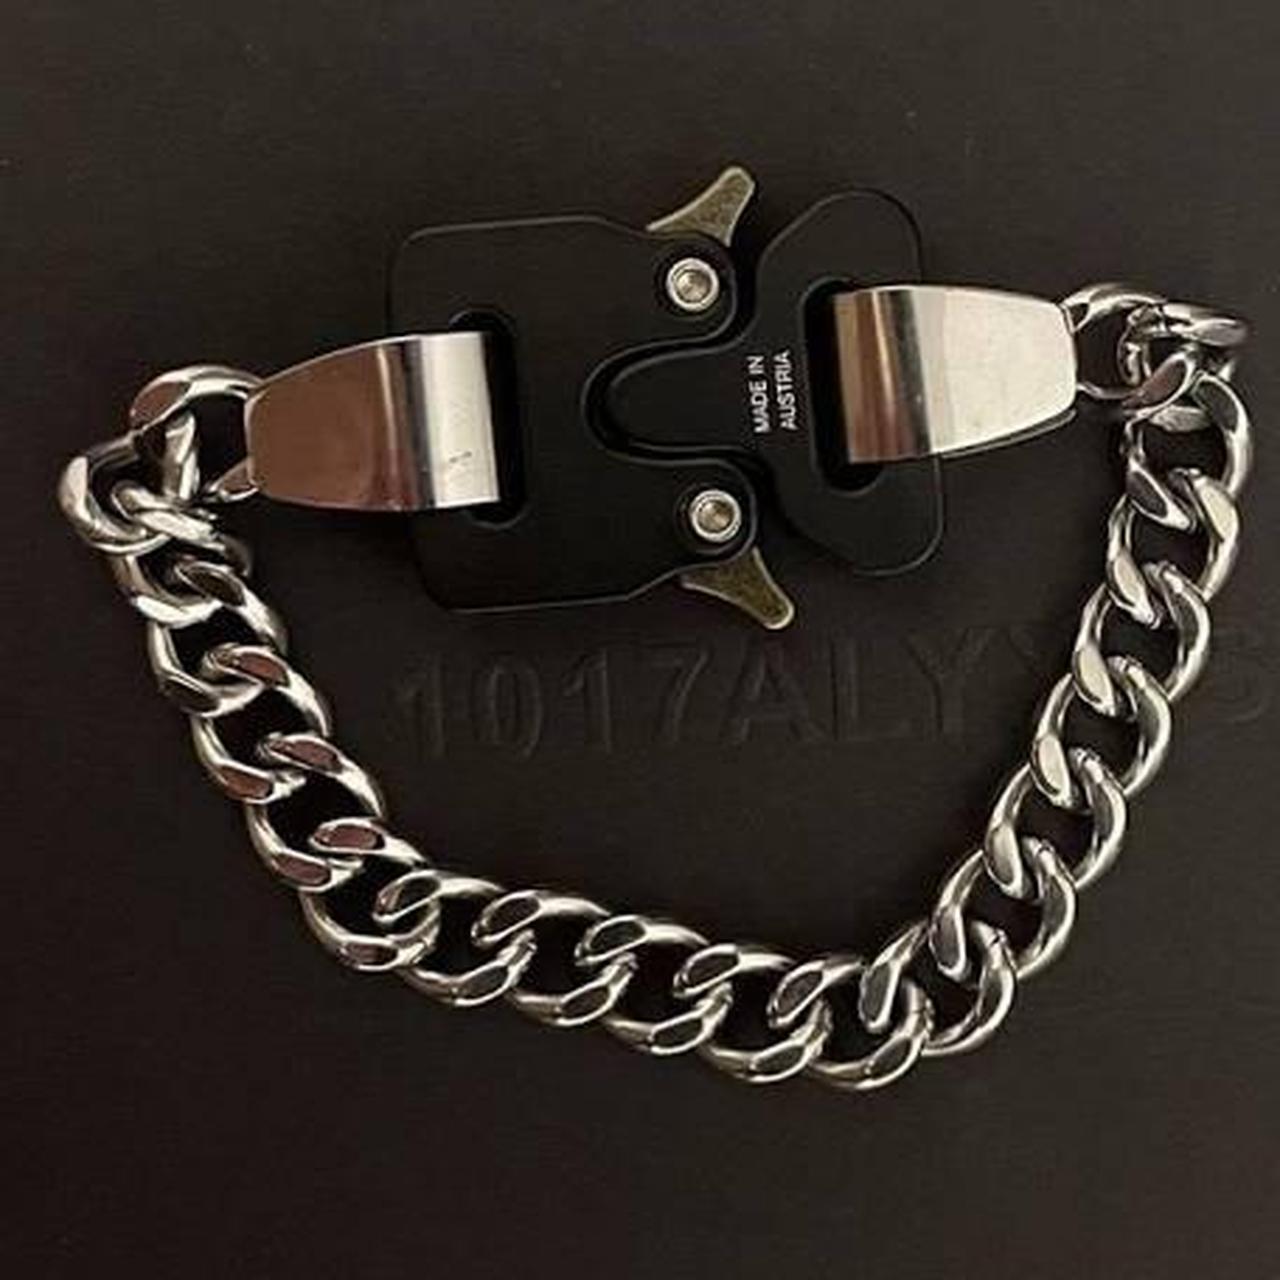 1017 Alyx 9sm Transparent/Clear Chain Bracelet - Depop